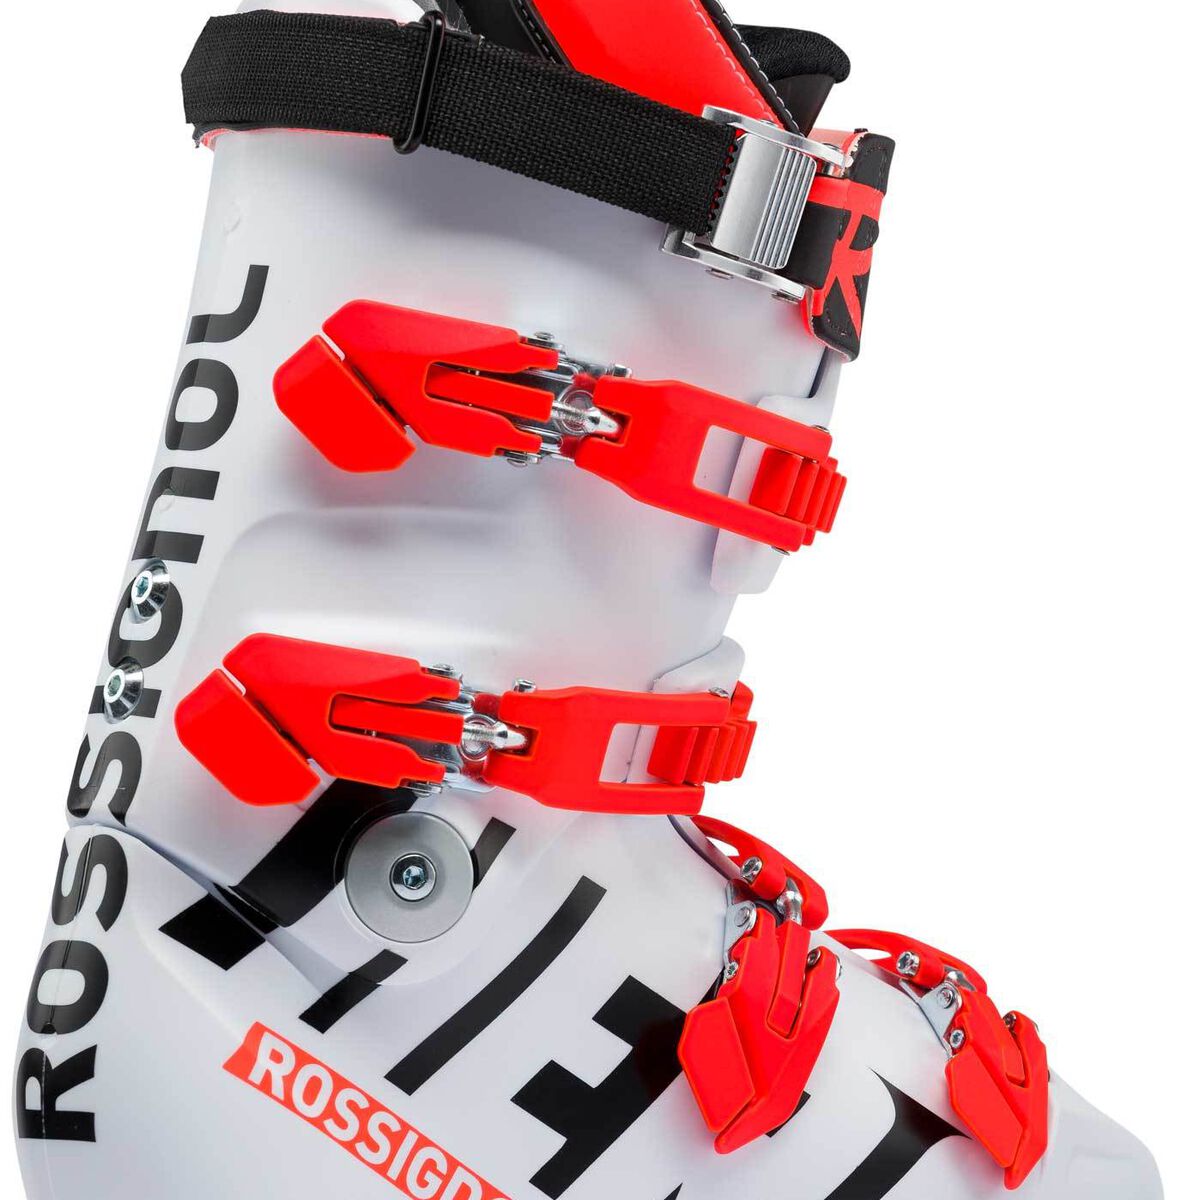 Unisex Racing Ski Boots Hero World Cup Za +